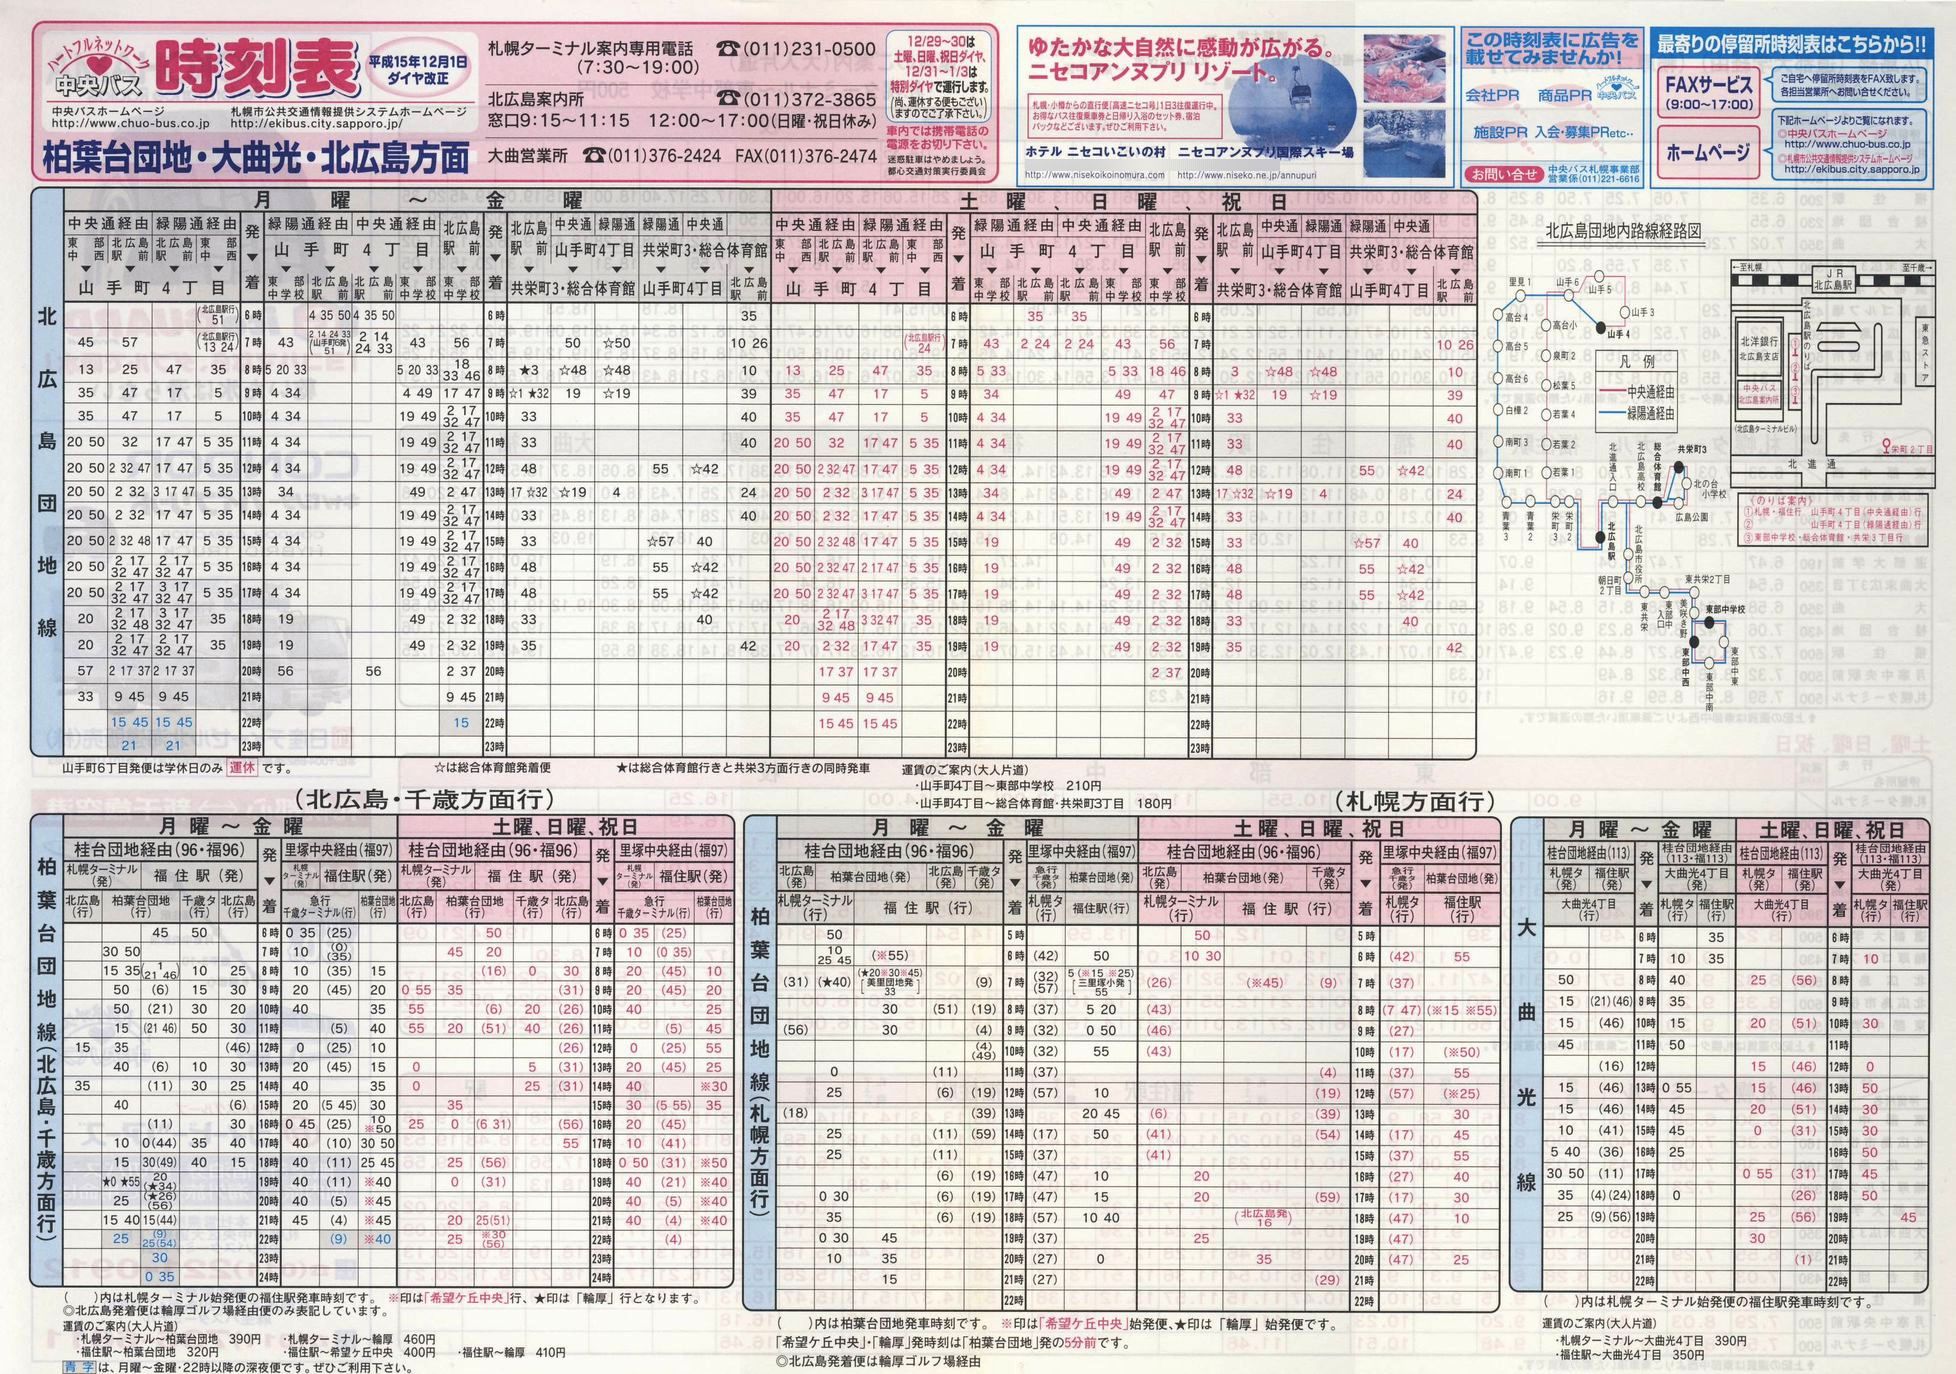 2003-12-01改正_北海道中央バス(札幌)_柏葉台団地・大曲光・北広島方面時刻表表面